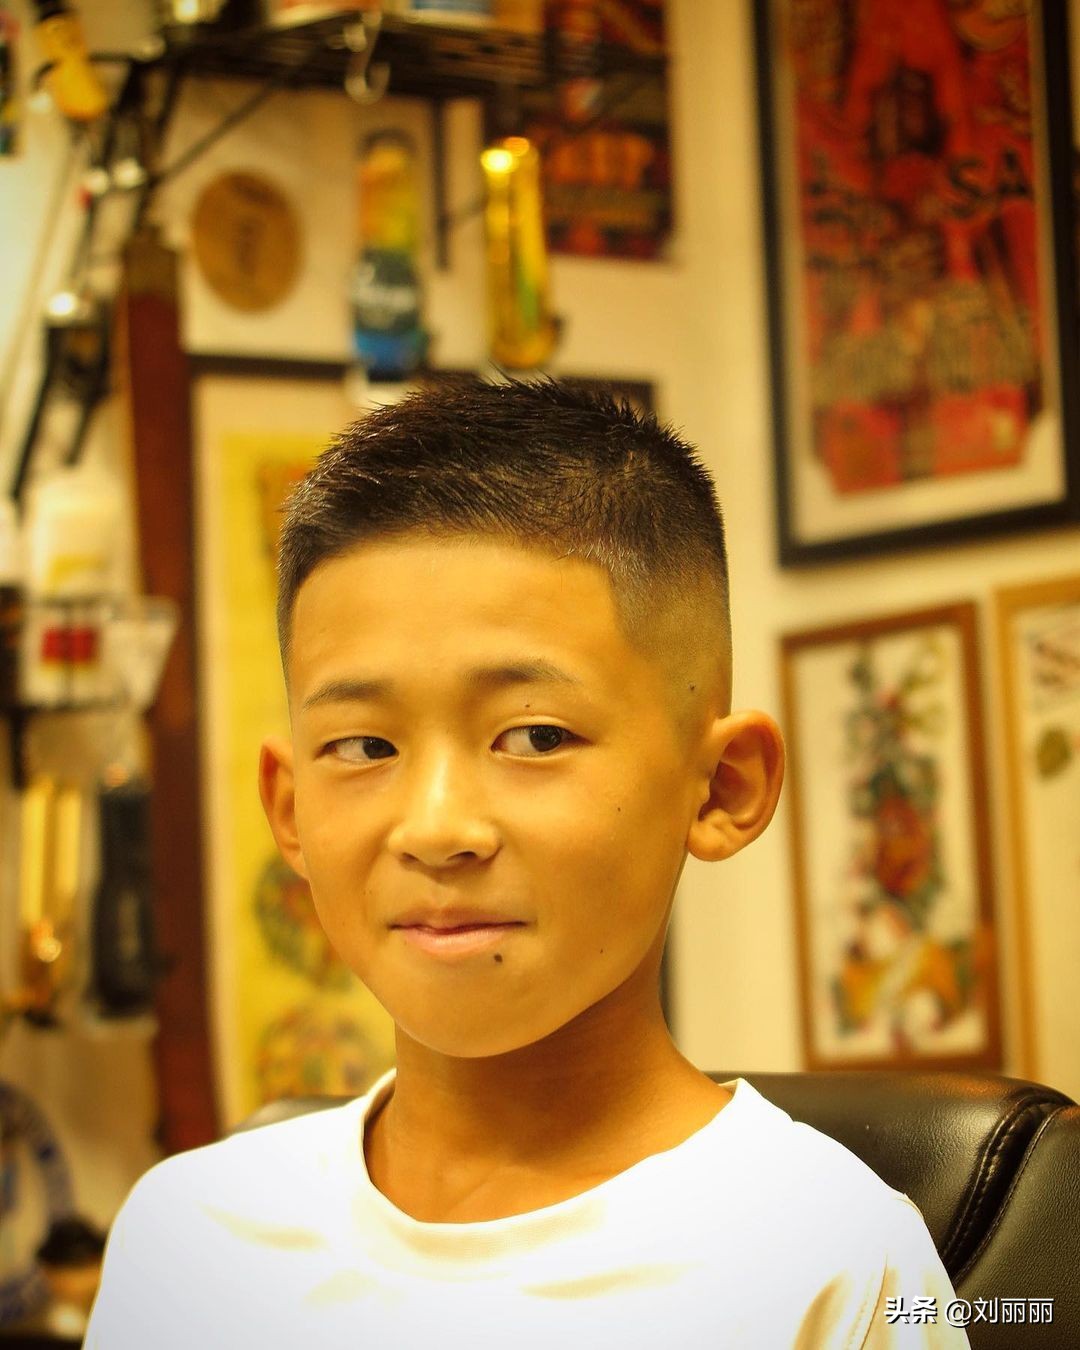 hair cut boy 2022